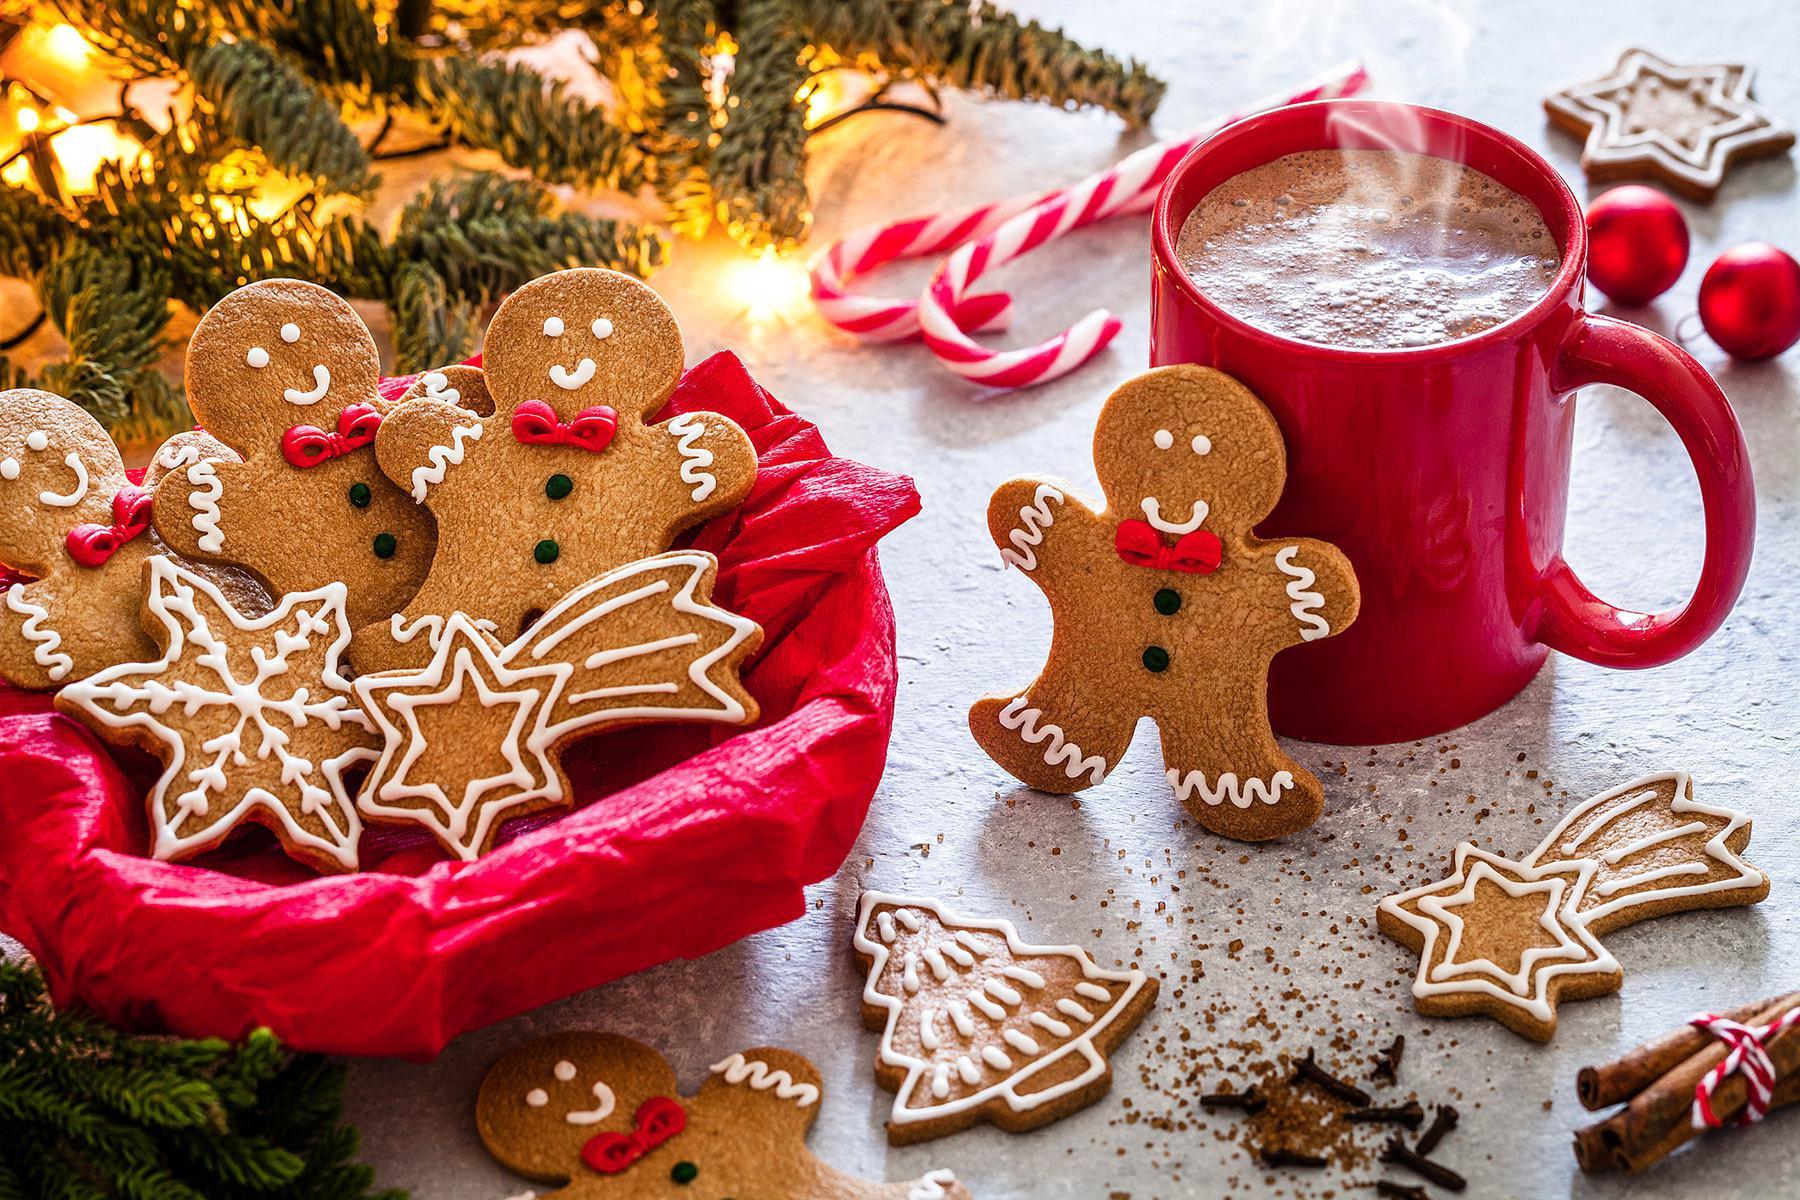 Les biscuits de Noël sont l'une des traditions les plus appréciées pendant les fêtes.